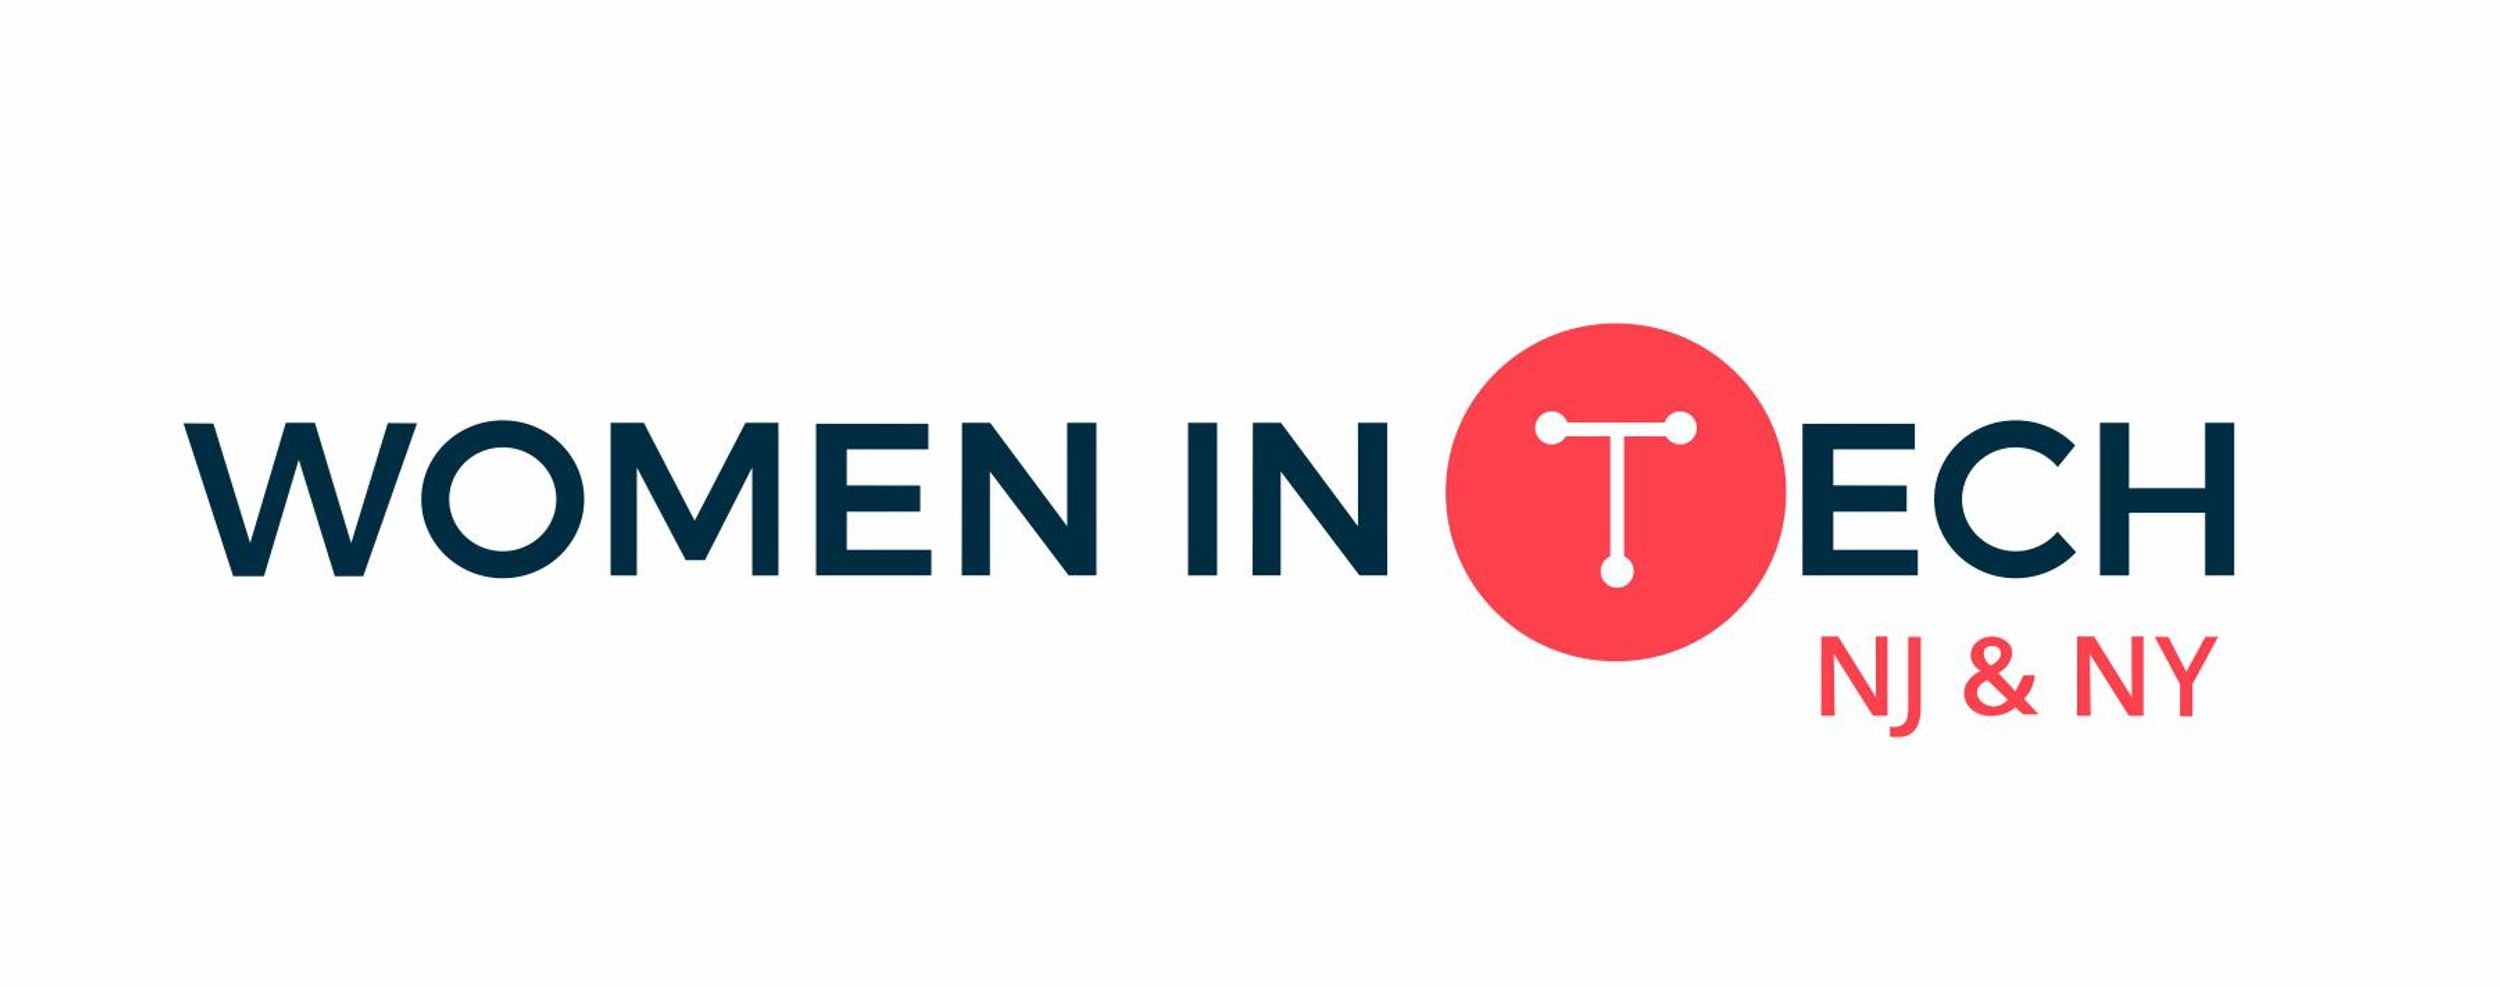 Women In Tech NJ & NY